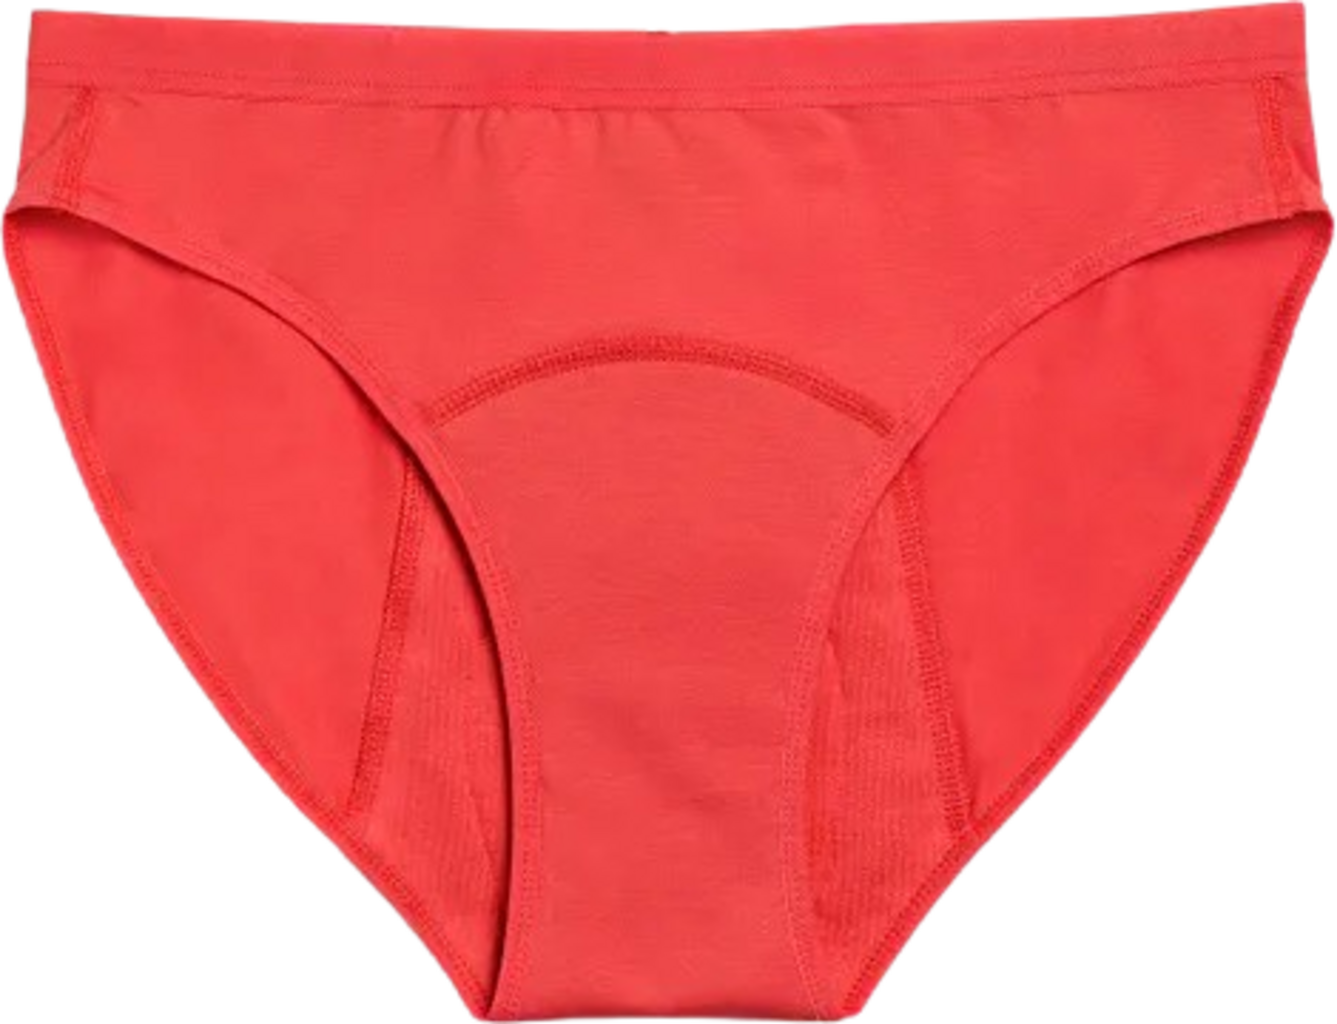 Imse Bright Red Teen Bikini Period Underwear - Heavy Flow - Ecco Verde  Online Shop